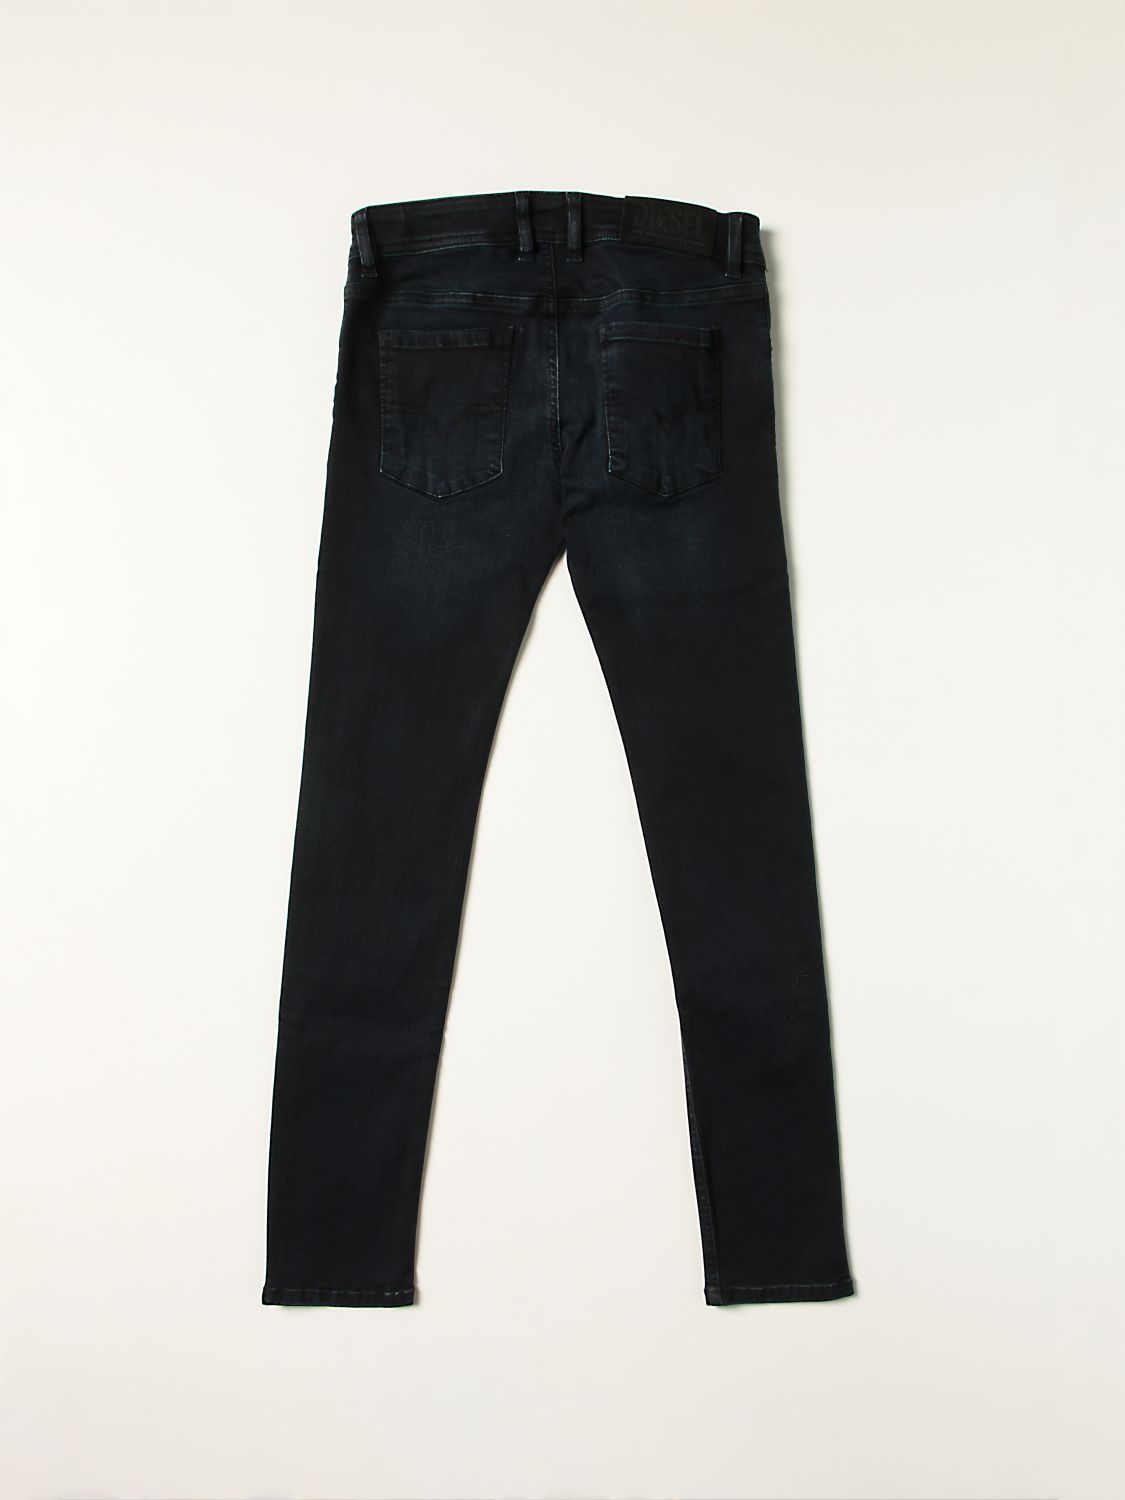 Jeans Diesel: Jeans Sleenker Diesel in denim skinny stretch blue 2